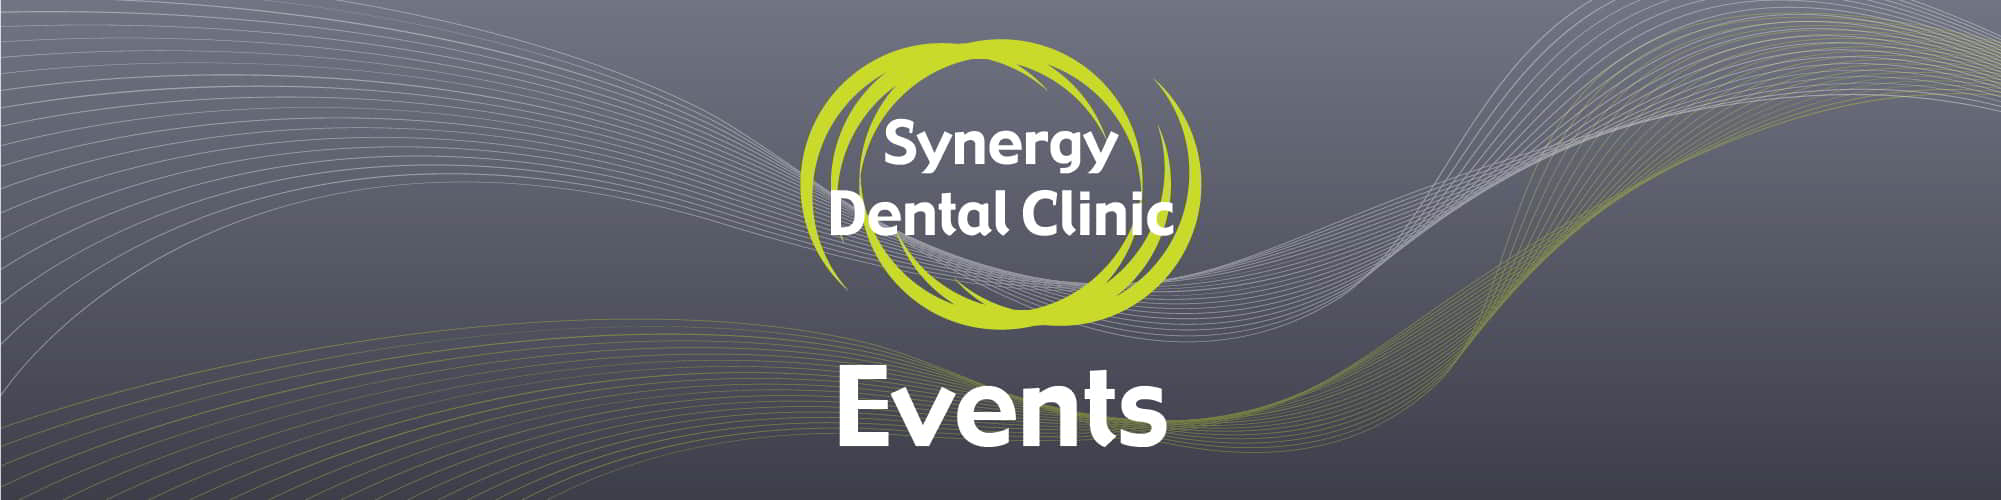 Synergy Dental Clinic Events